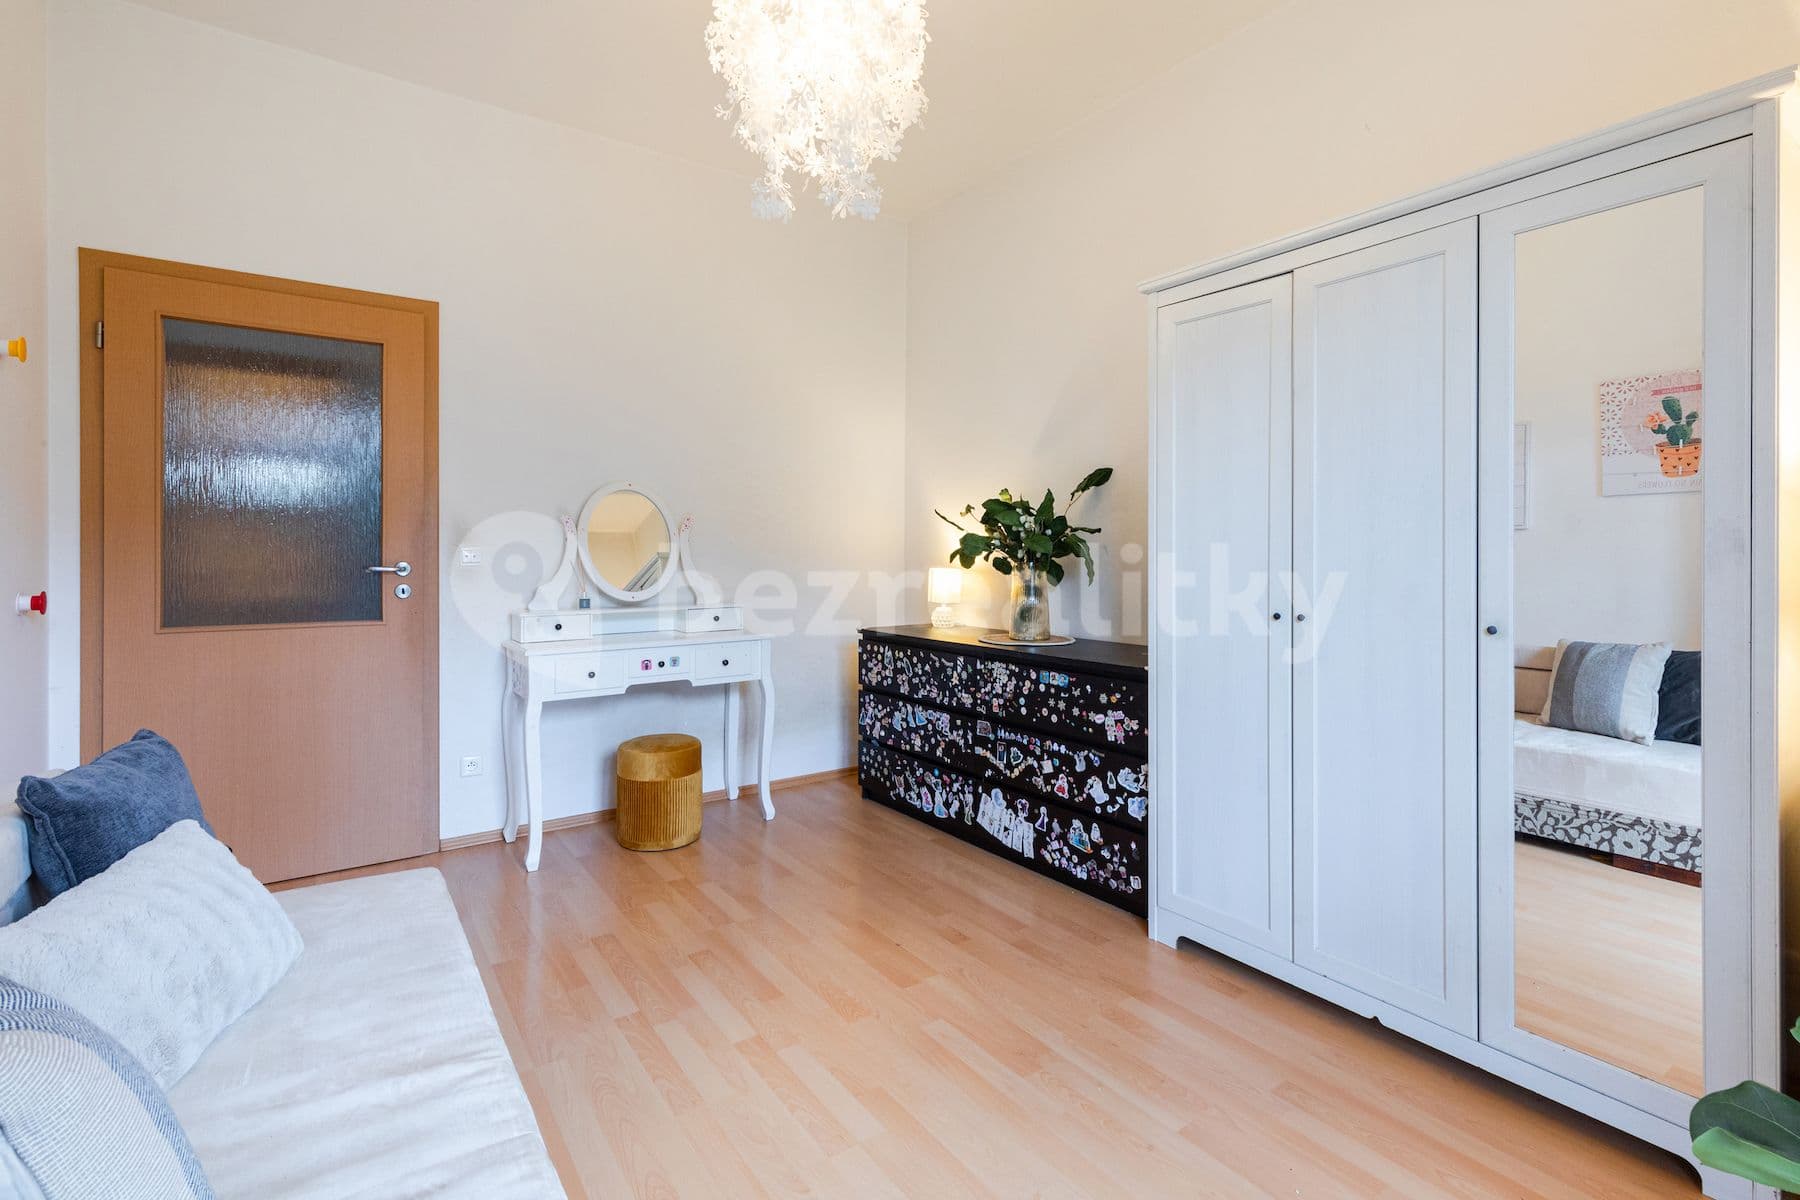 2 bedroom with open-plan kitchen flat for sale, 67 m², Lomená, Zbuzany, Středočeský Region